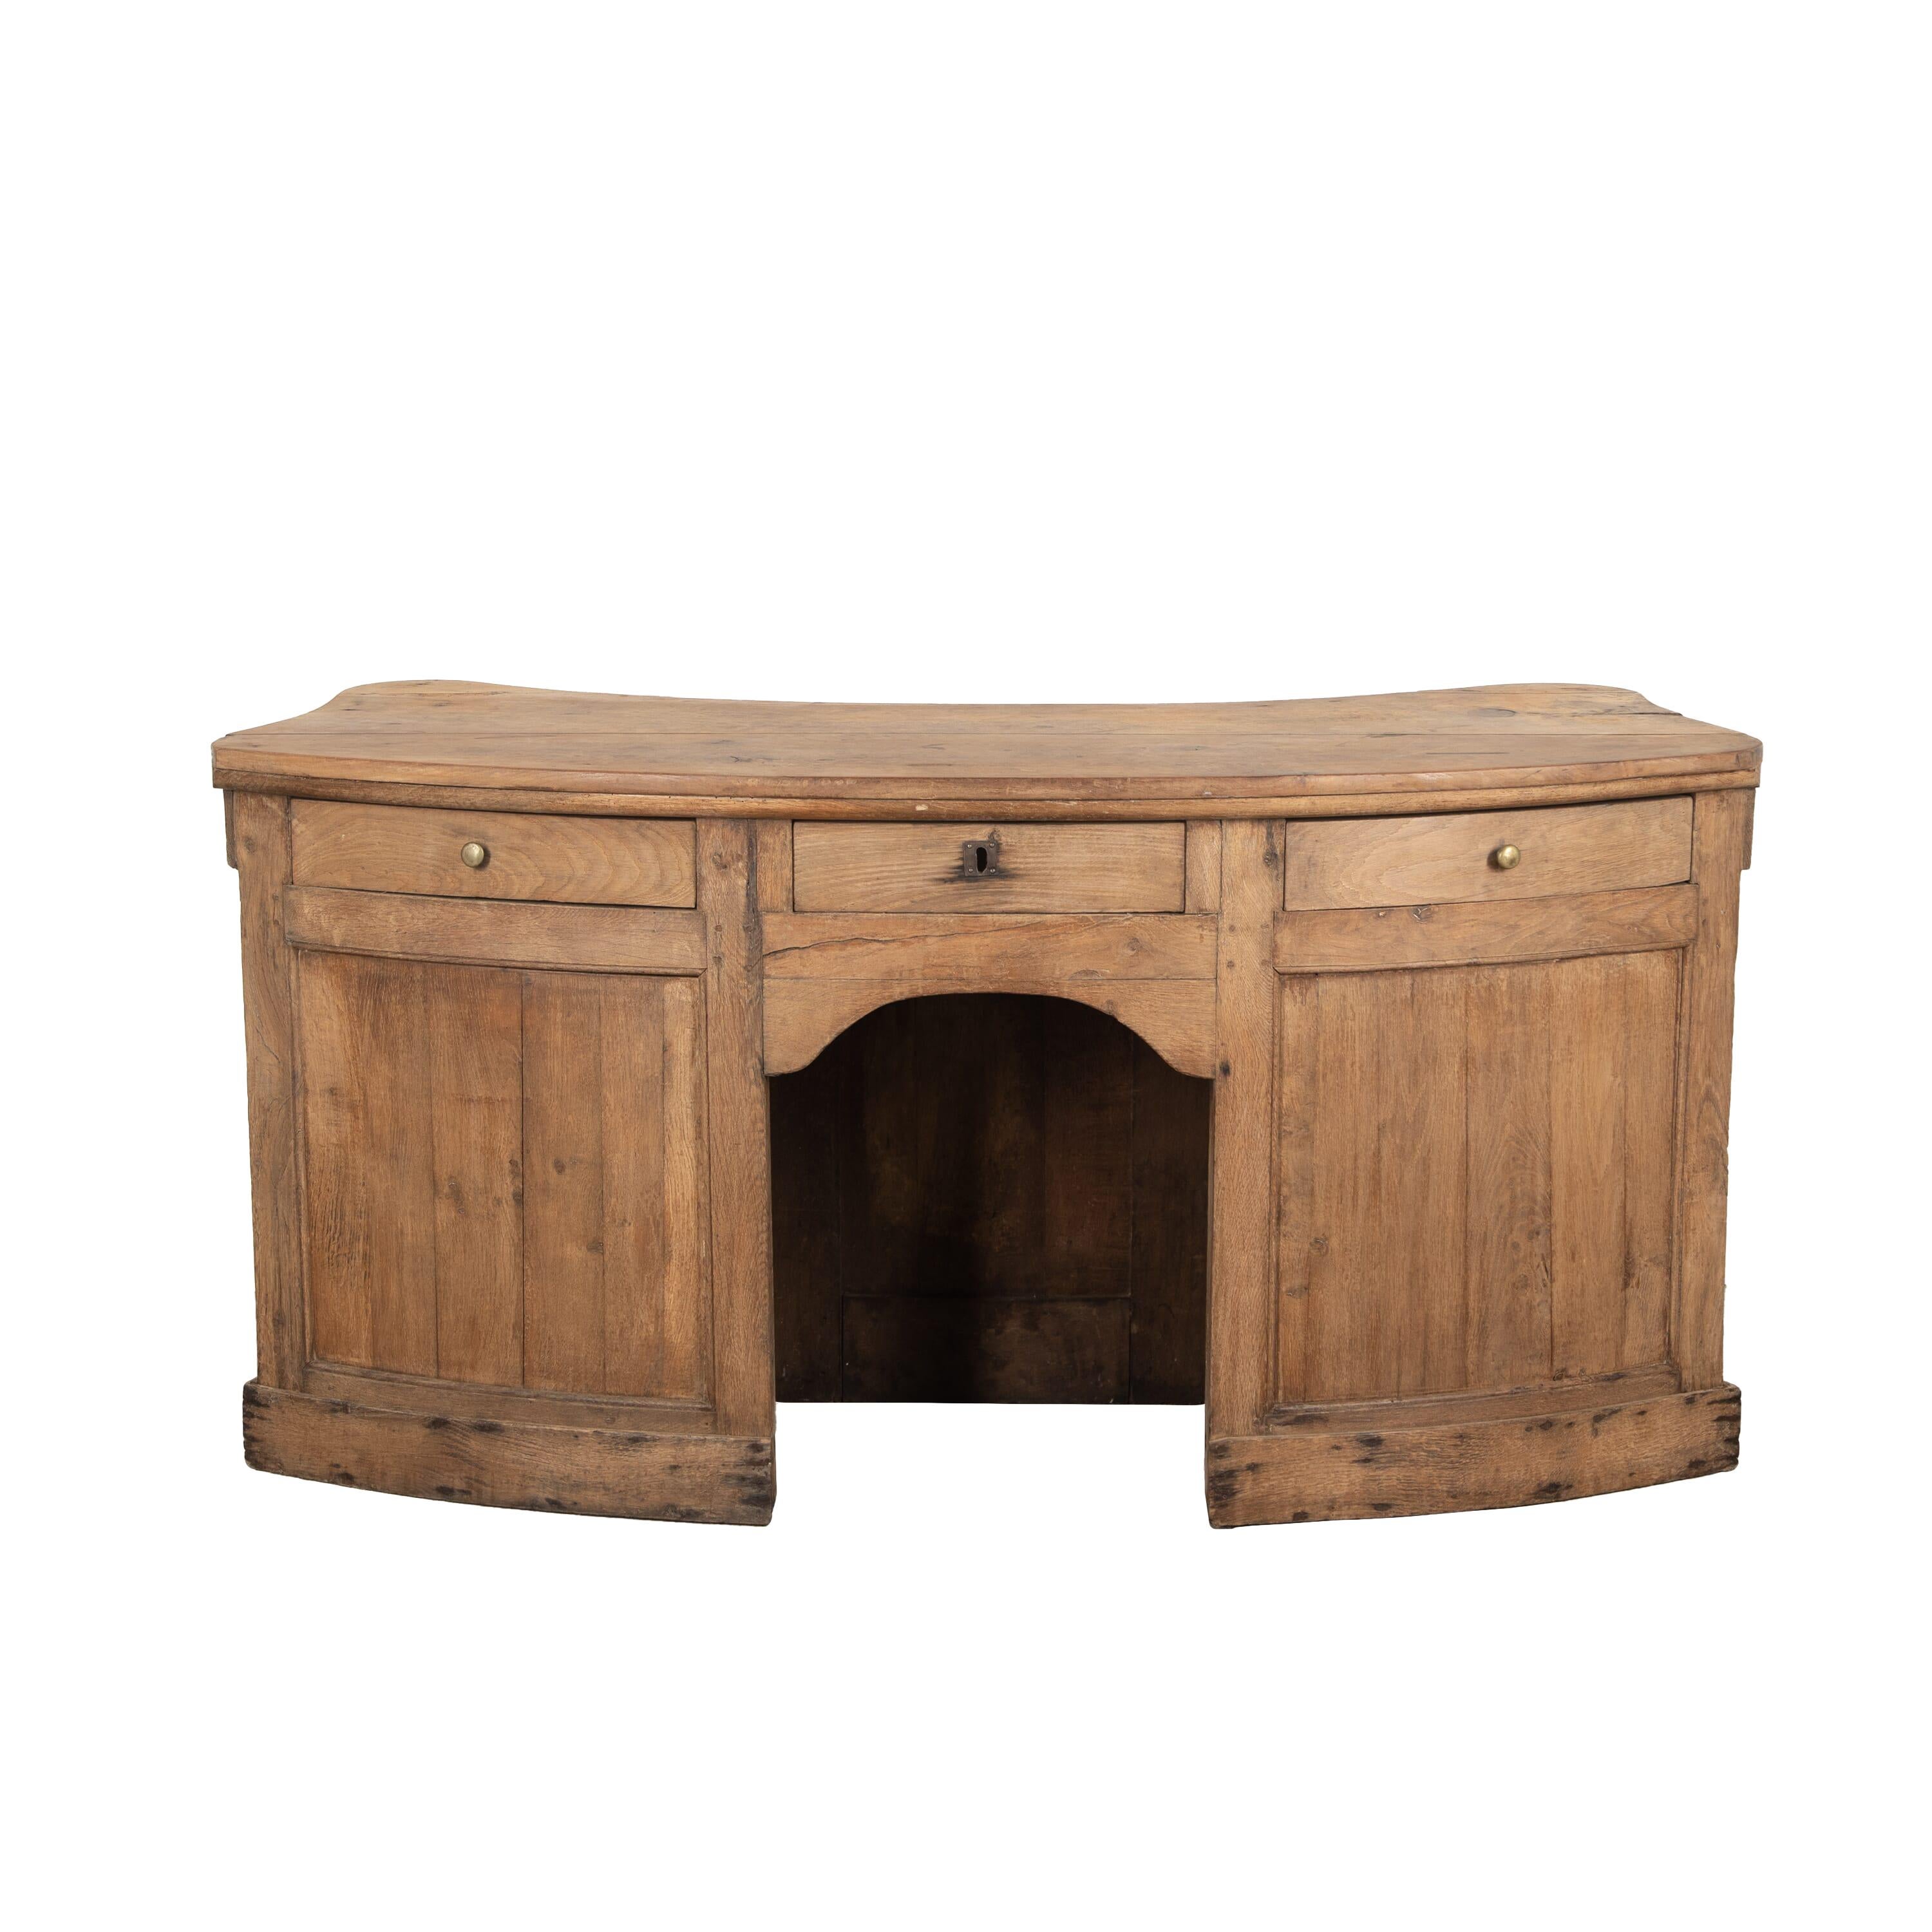 Ladentisch aus französischer Eiche aus dem 19. Jahrhundert.
Mit einer außergewöhnlichen geschwungenen Form mit Säulendetails auf der Vorderseite. Dahinter befinden sich drei nützliche Schubladen und ein Platz für die Nutzung als Schreibtisch.
um